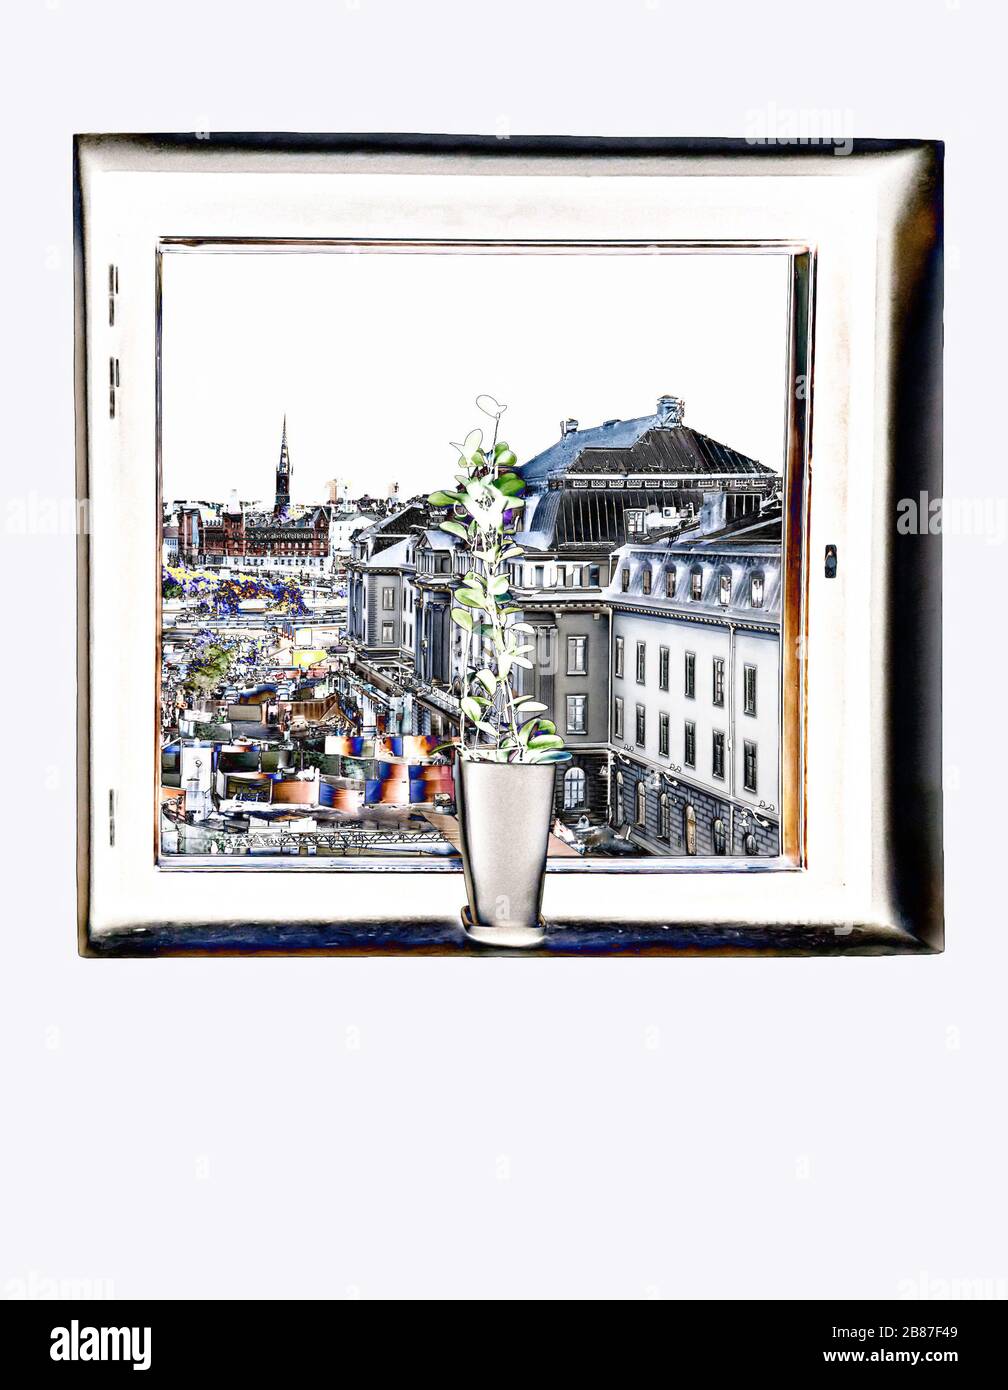 Vase und Fenster. Blick durch das Fenster auf den Bahnhof, Stockholm, Schweden. Malfilter angewendet Stockfoto